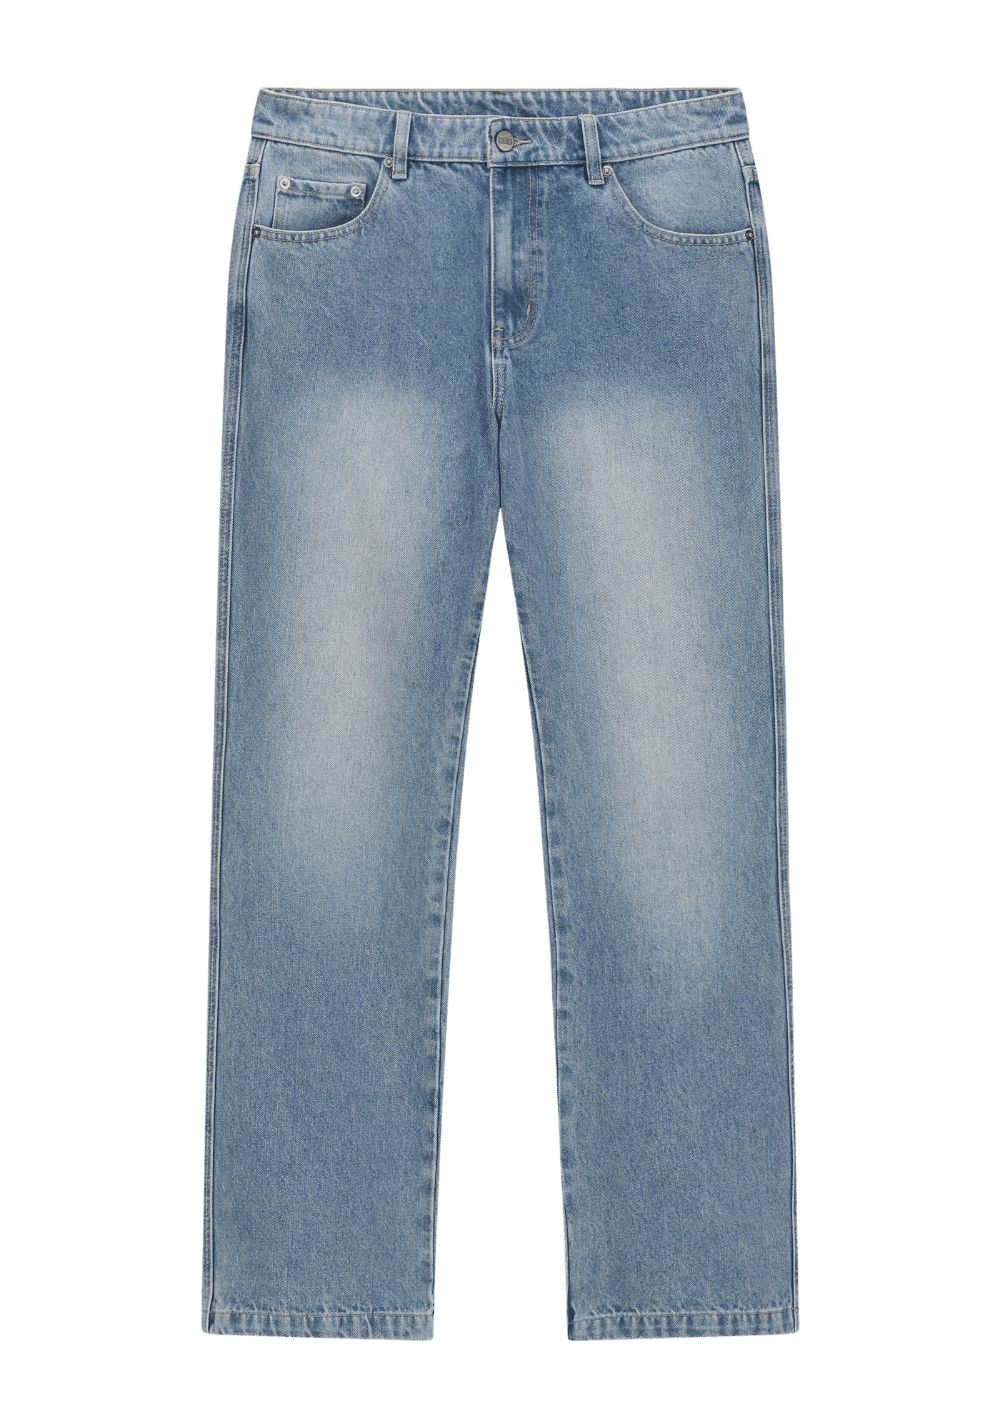 Mud Dyed Vintage Distressed Jeans - PSYLOS 1, Mud Dyed Vintage Distressed Jeans, Pants, Boneless, PSYLOS 1